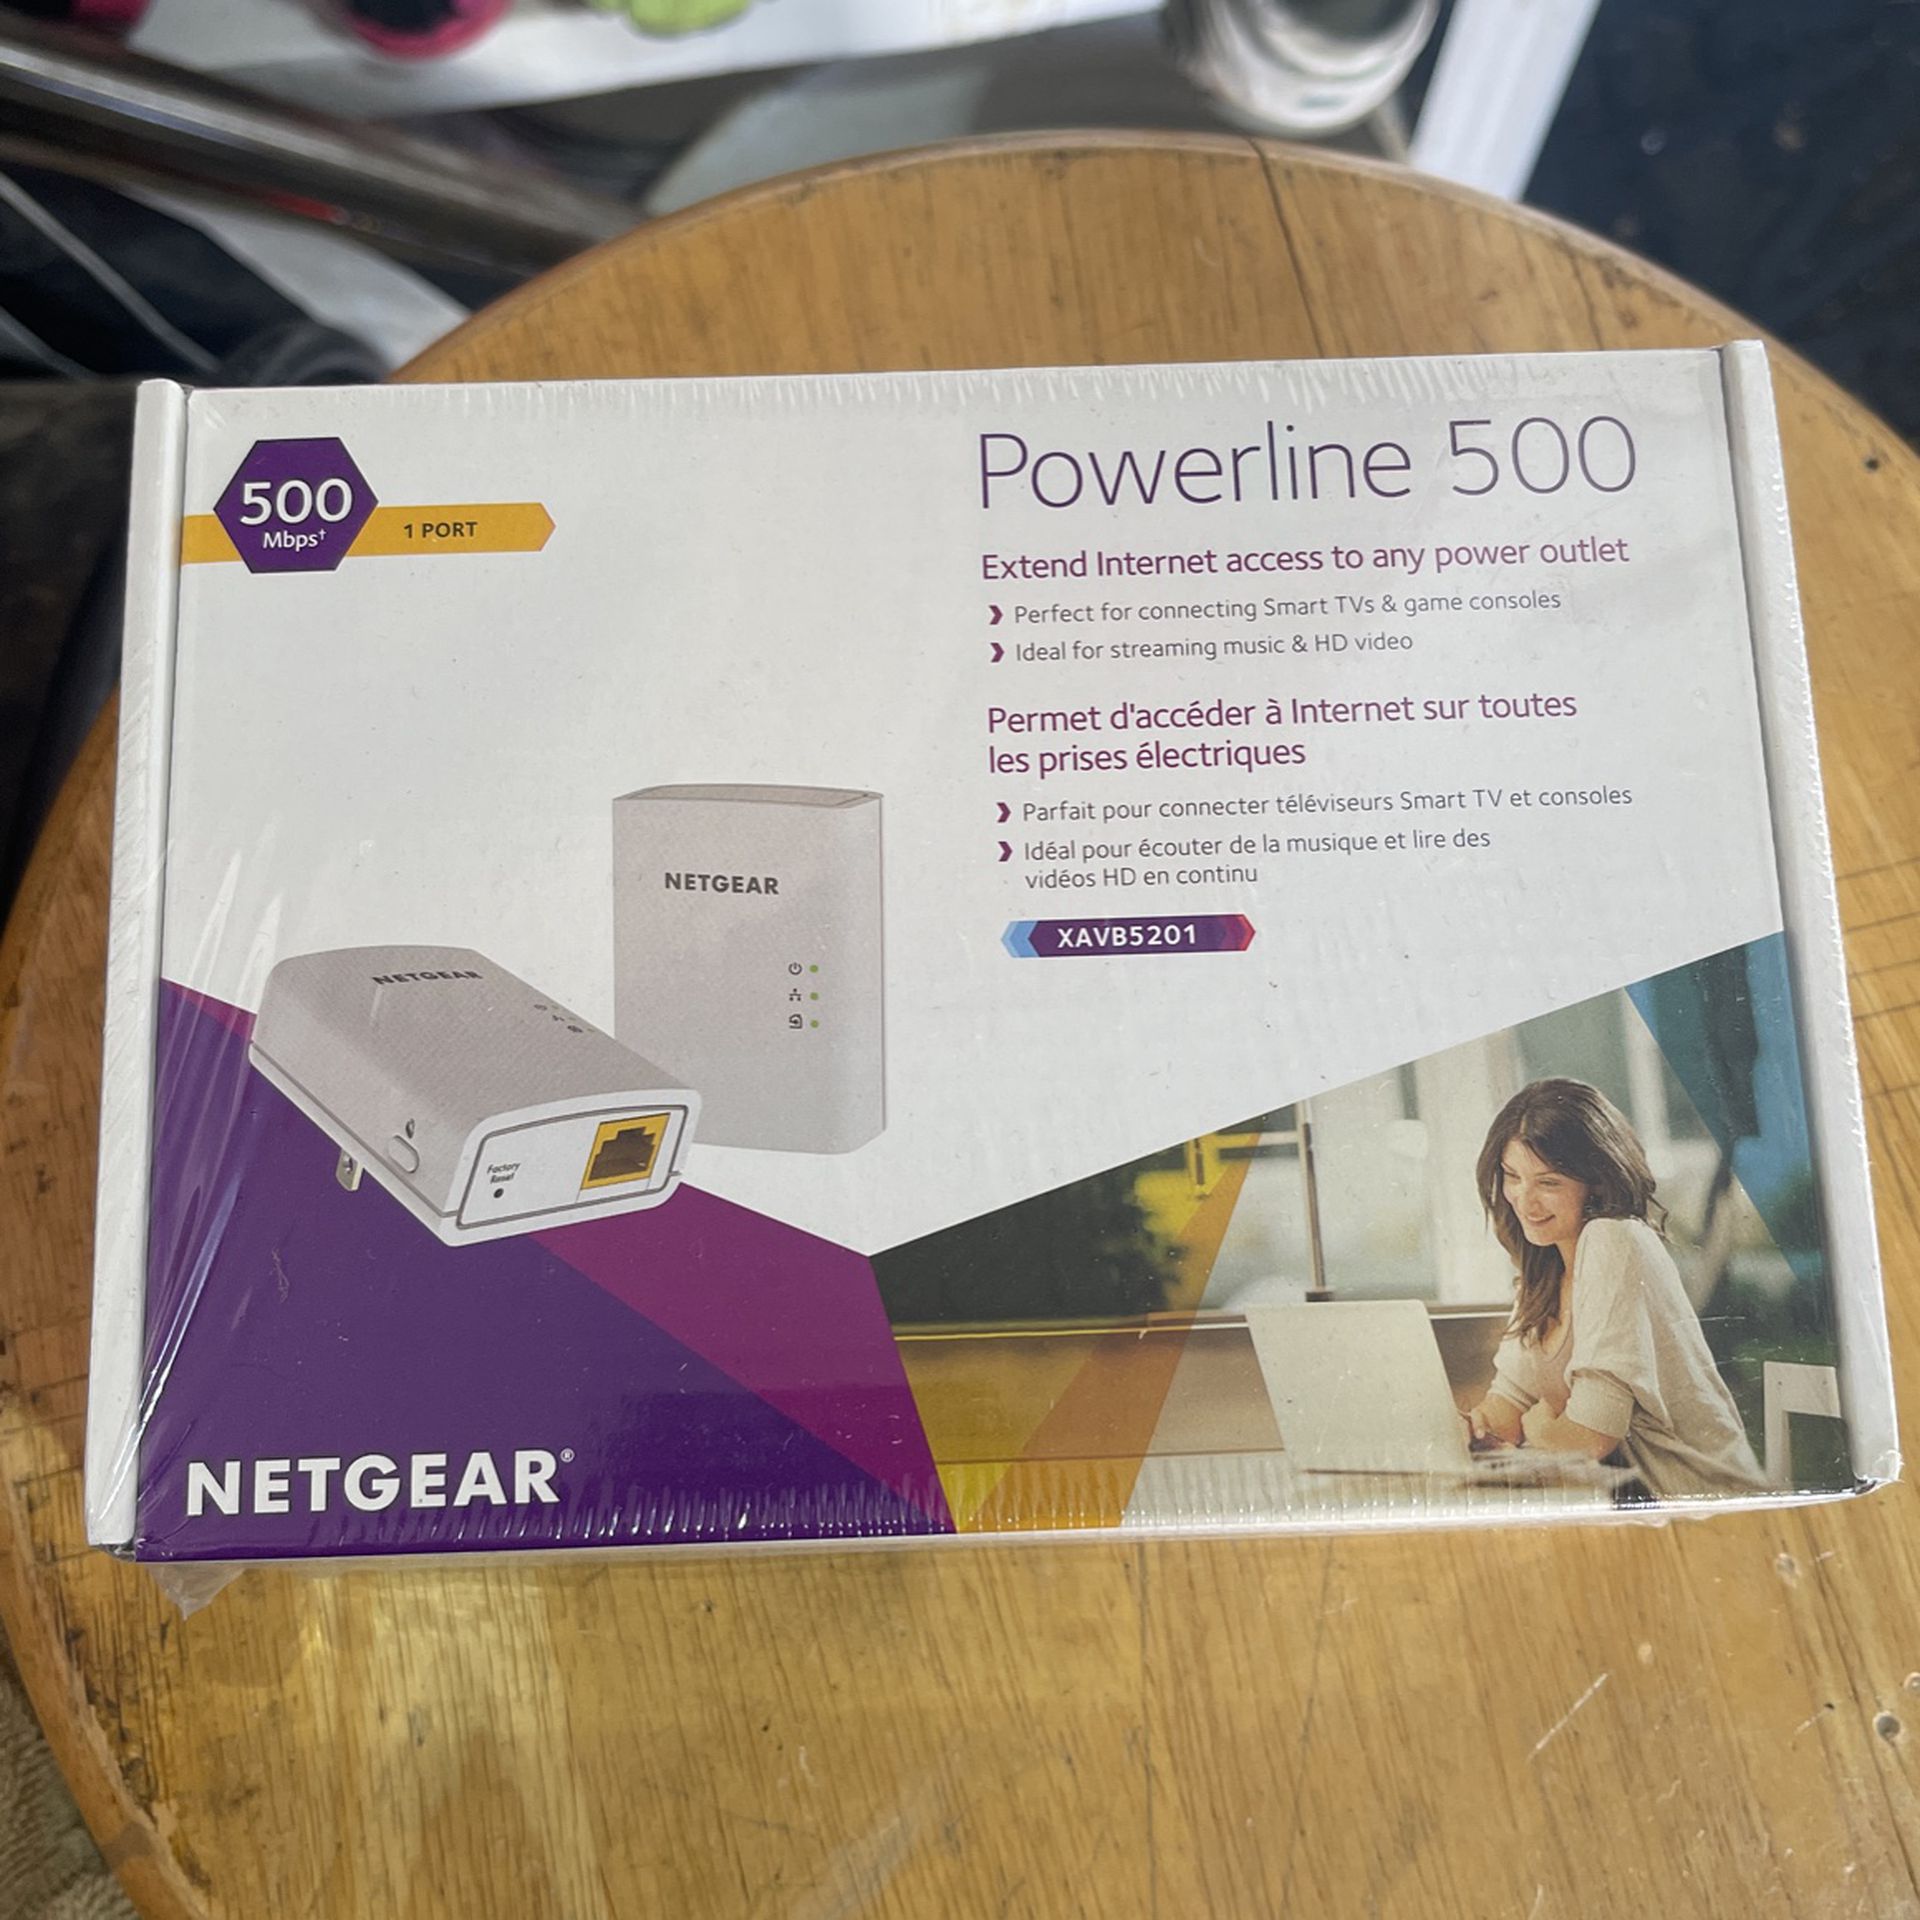 NETGEAR Power line 500